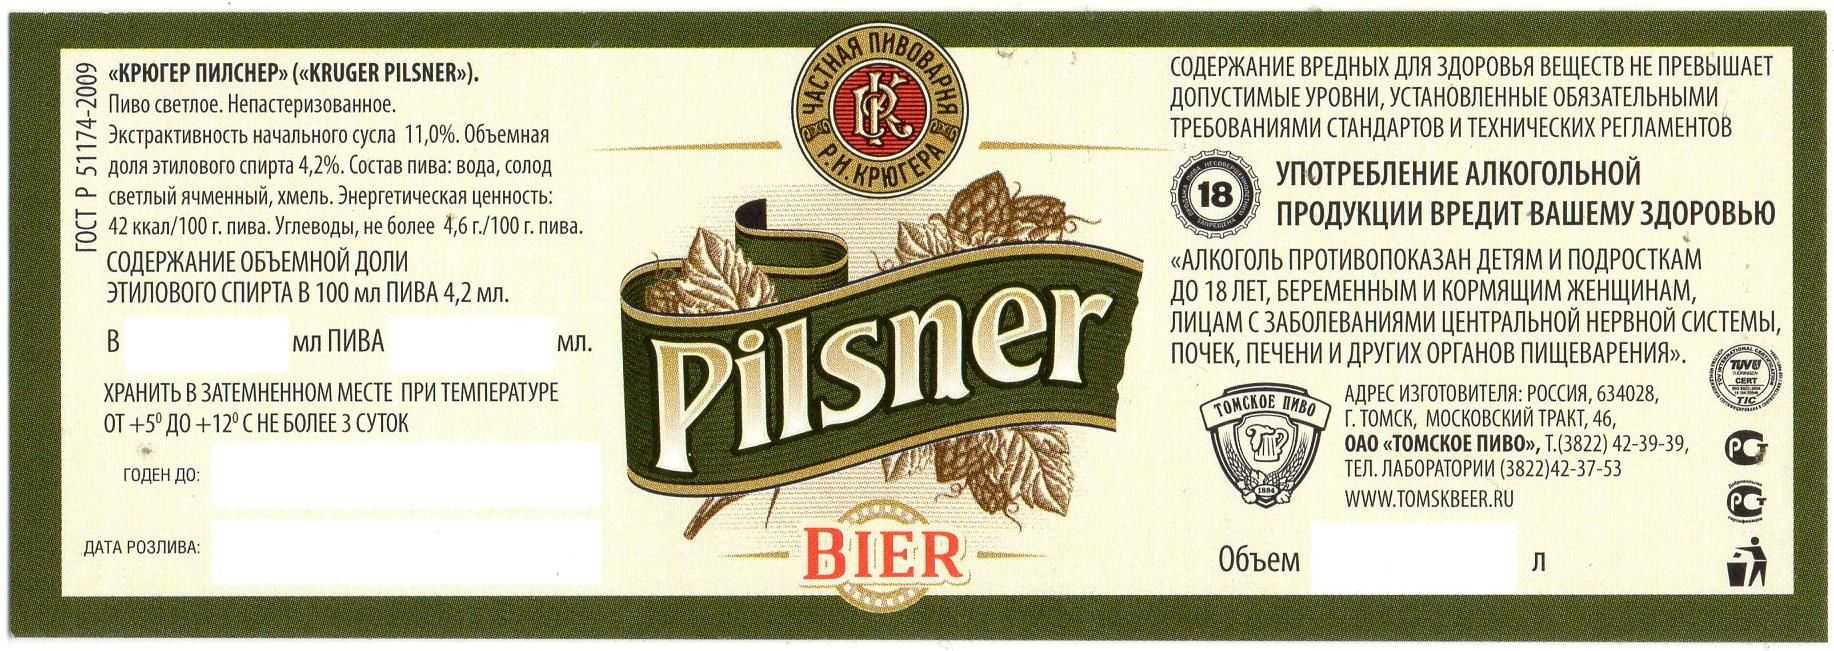 Пилснер против лагера: в чём отличия? | beer-style